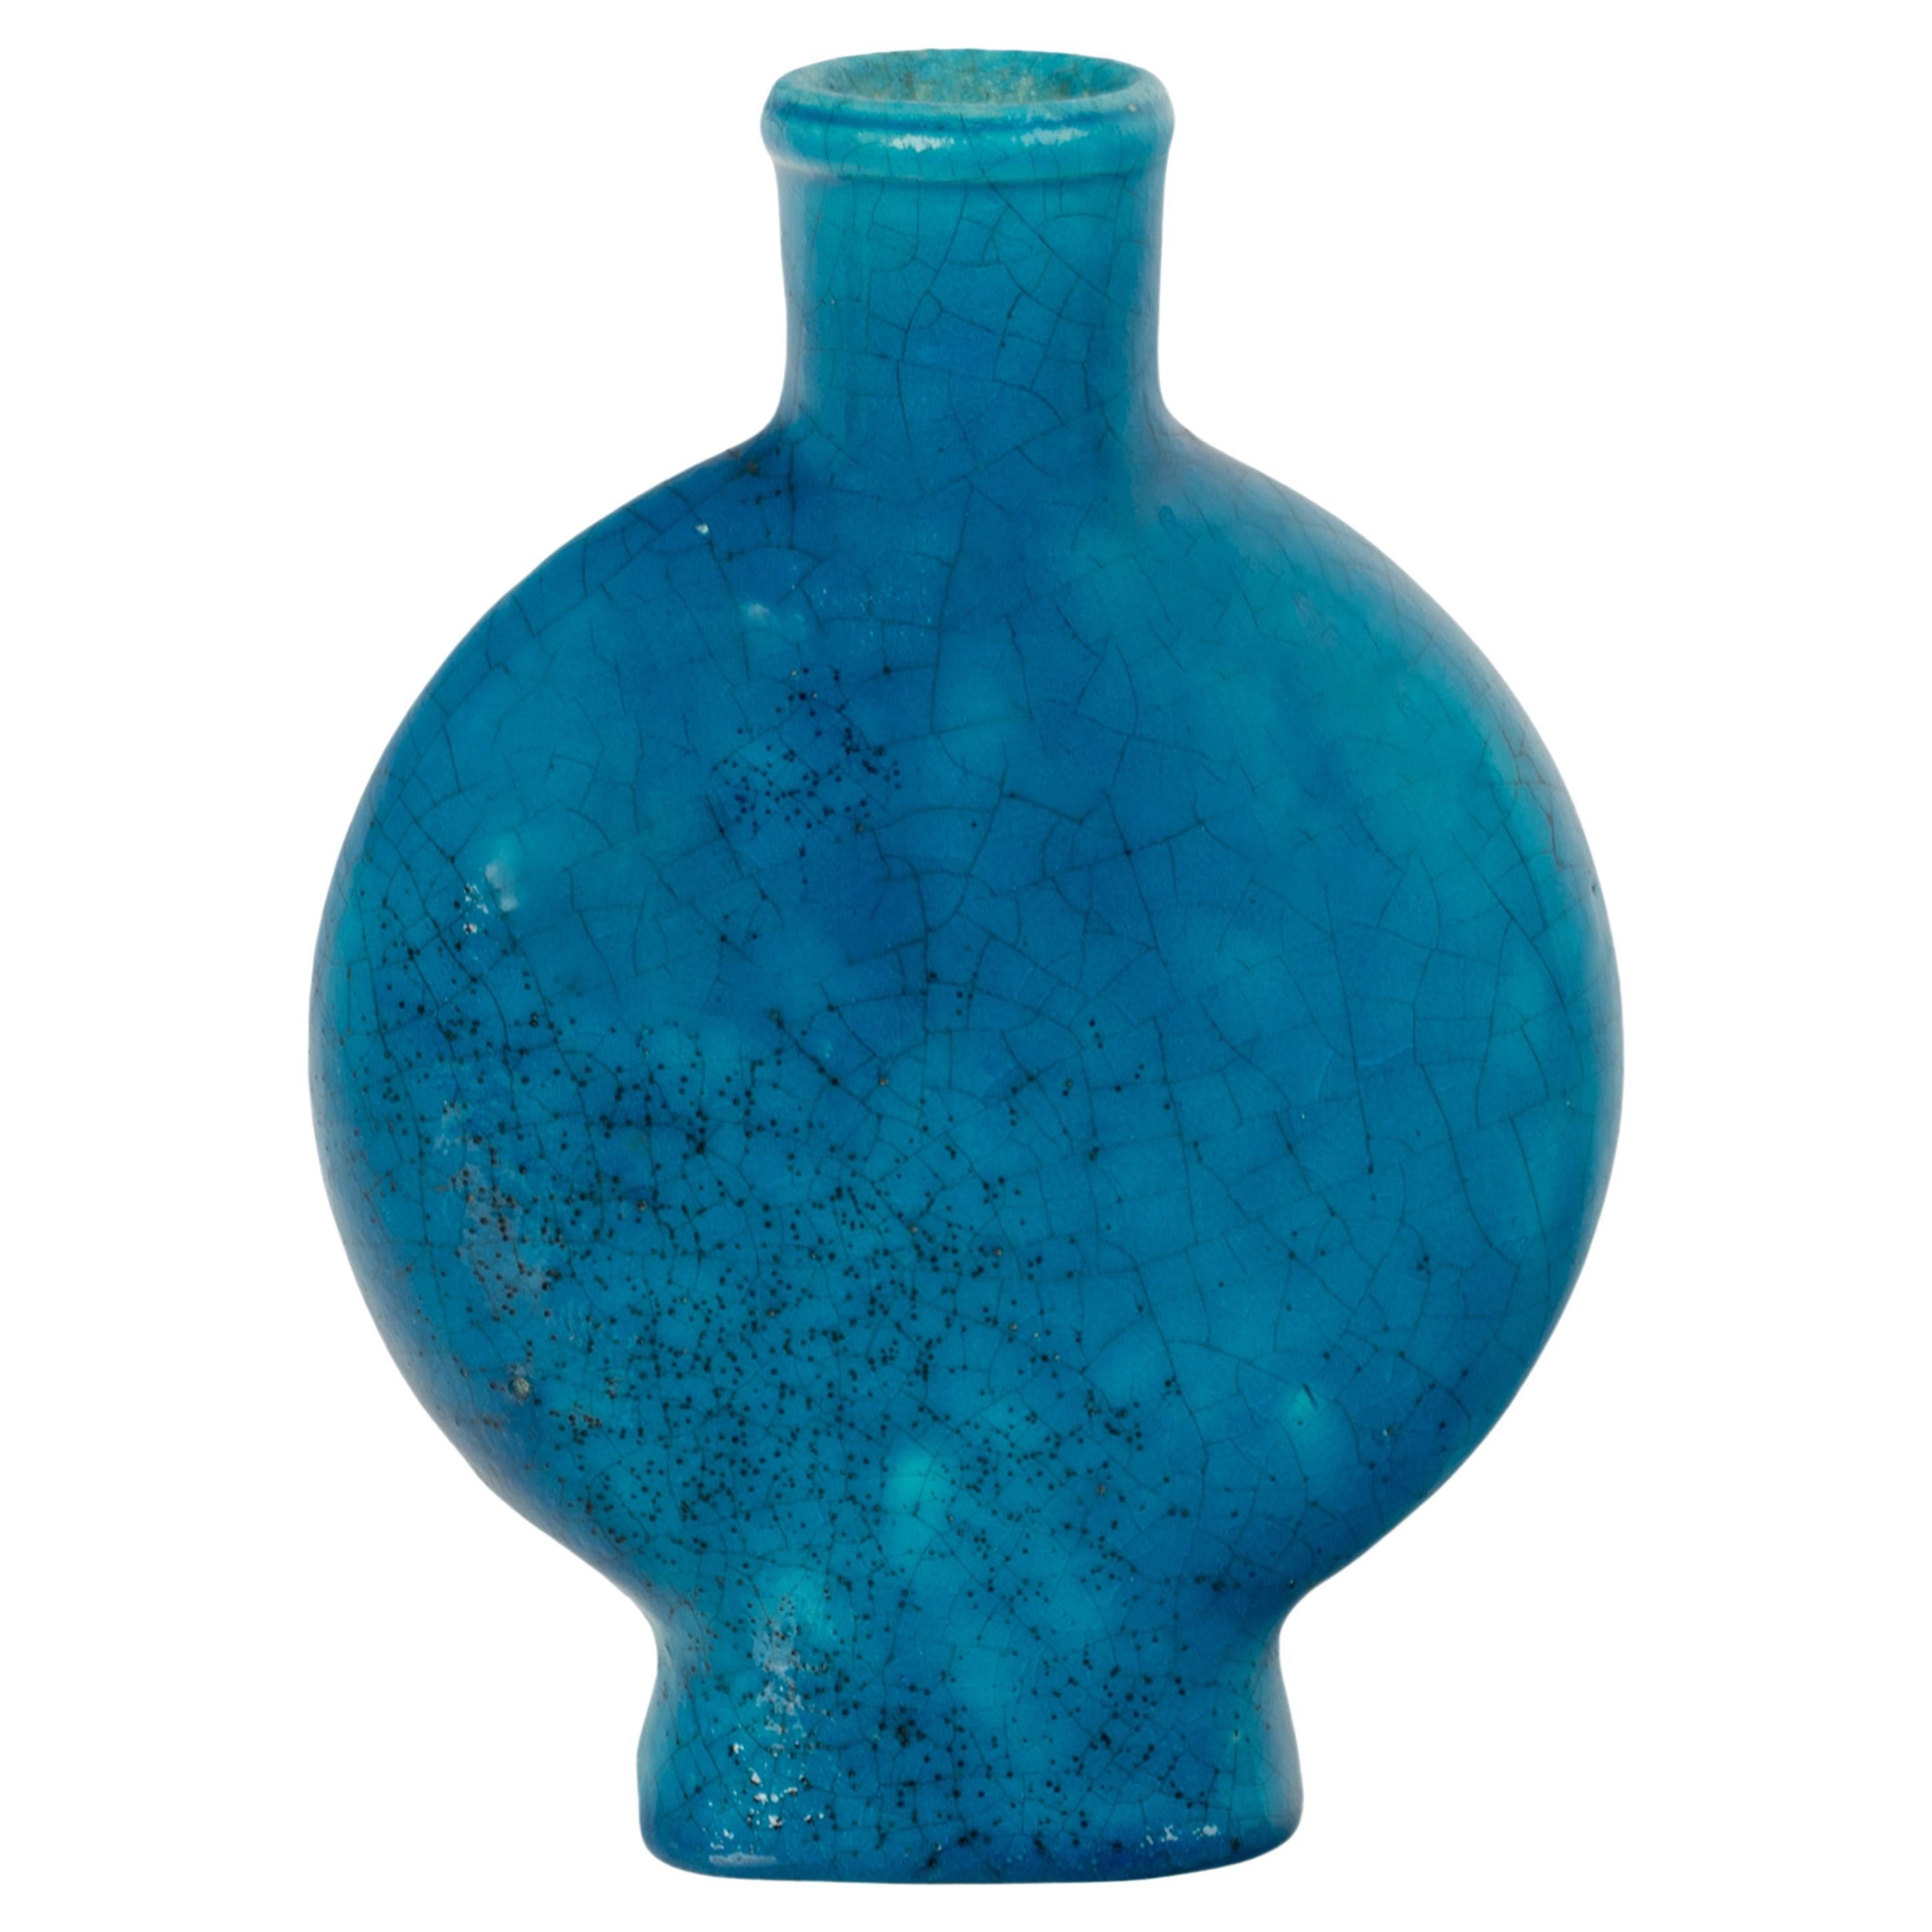 Ancien vase de poterie Art déco français bleu turquoise signé Edmond Lachenal, 1930